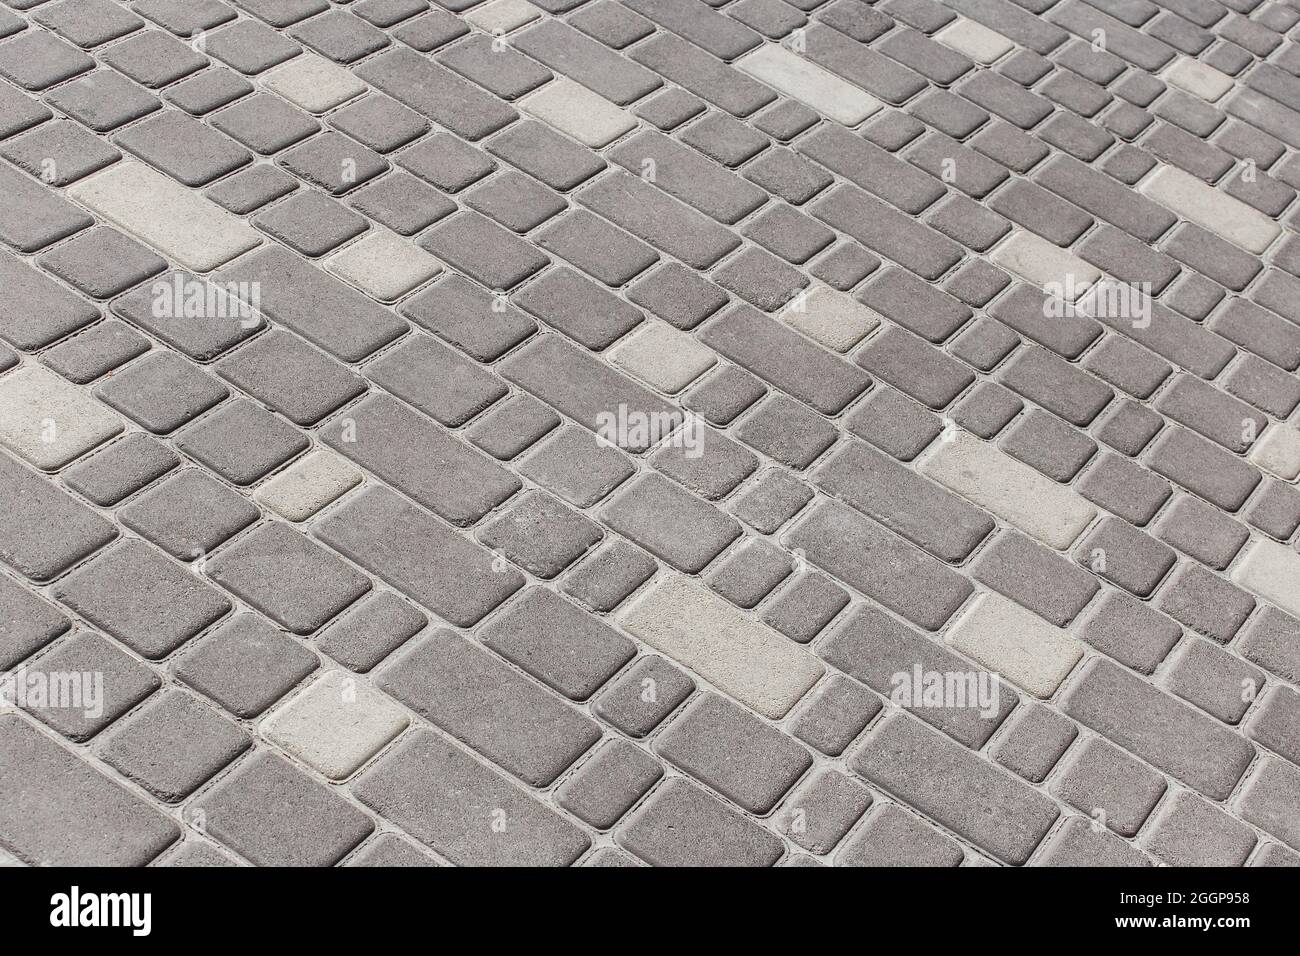 Oberfläche Stadt Boden Textur Pflaster Stein Mosaik Fliesen grau Straße Platten Hintergrund. Stockfoto